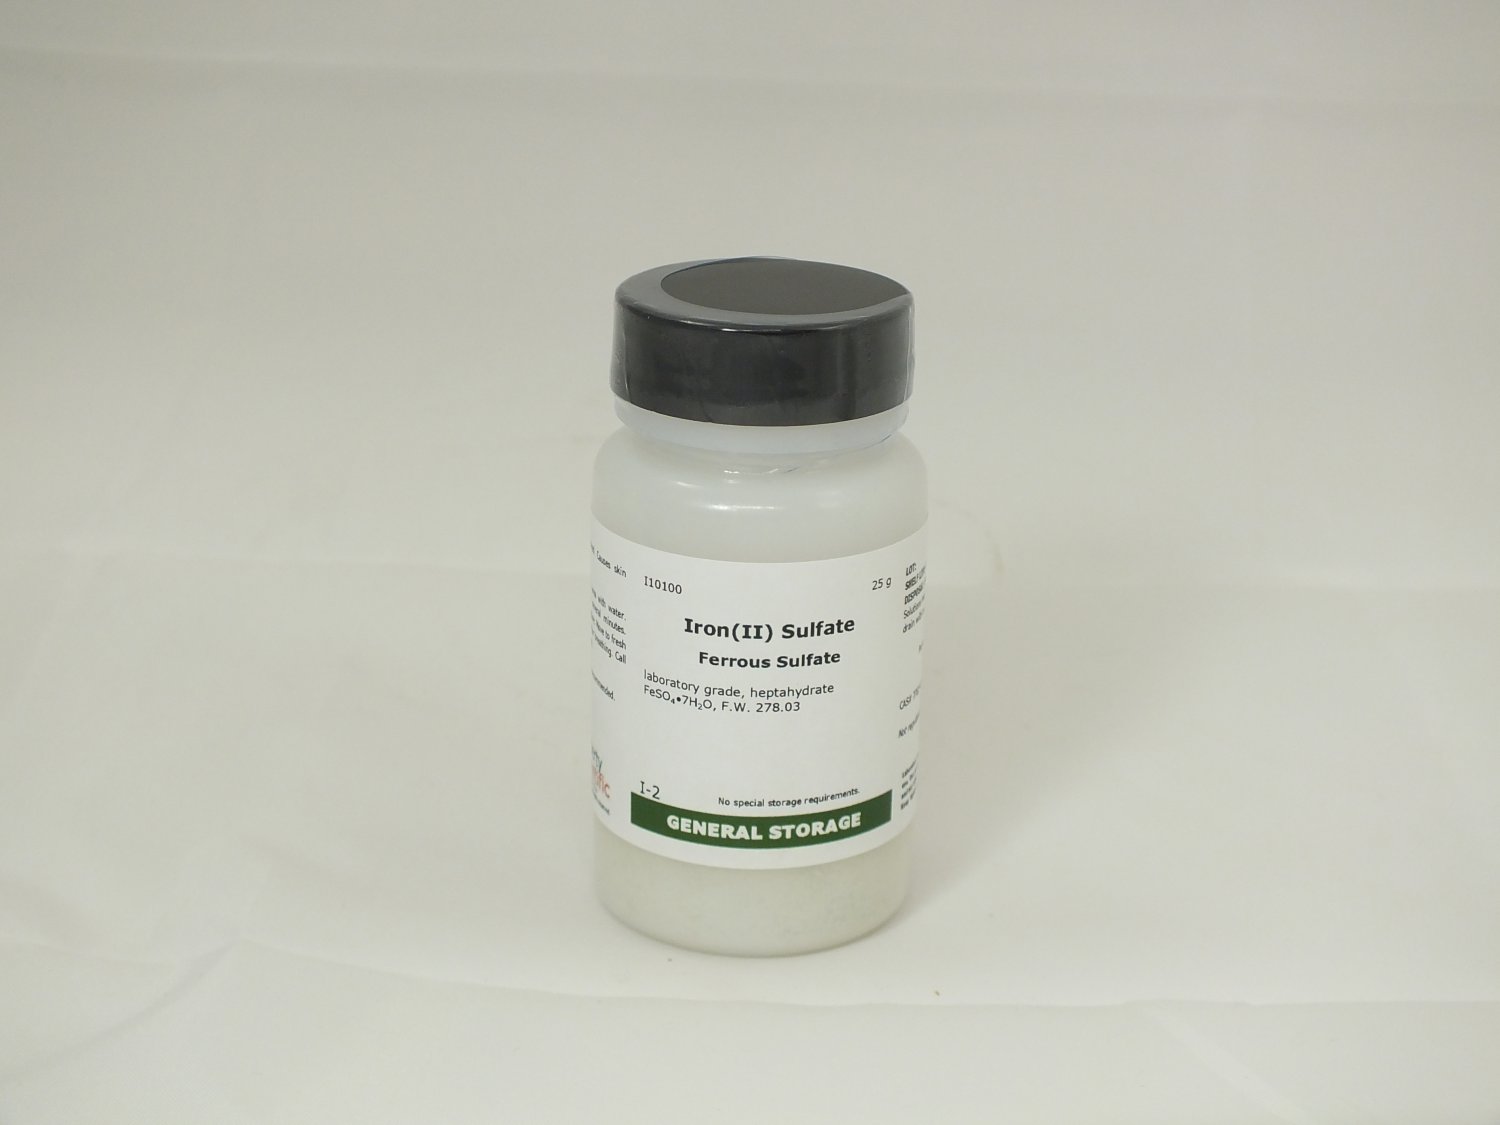 Iron(II) Sulfate -- Ferrous Sulfate, lab grade, 25 g